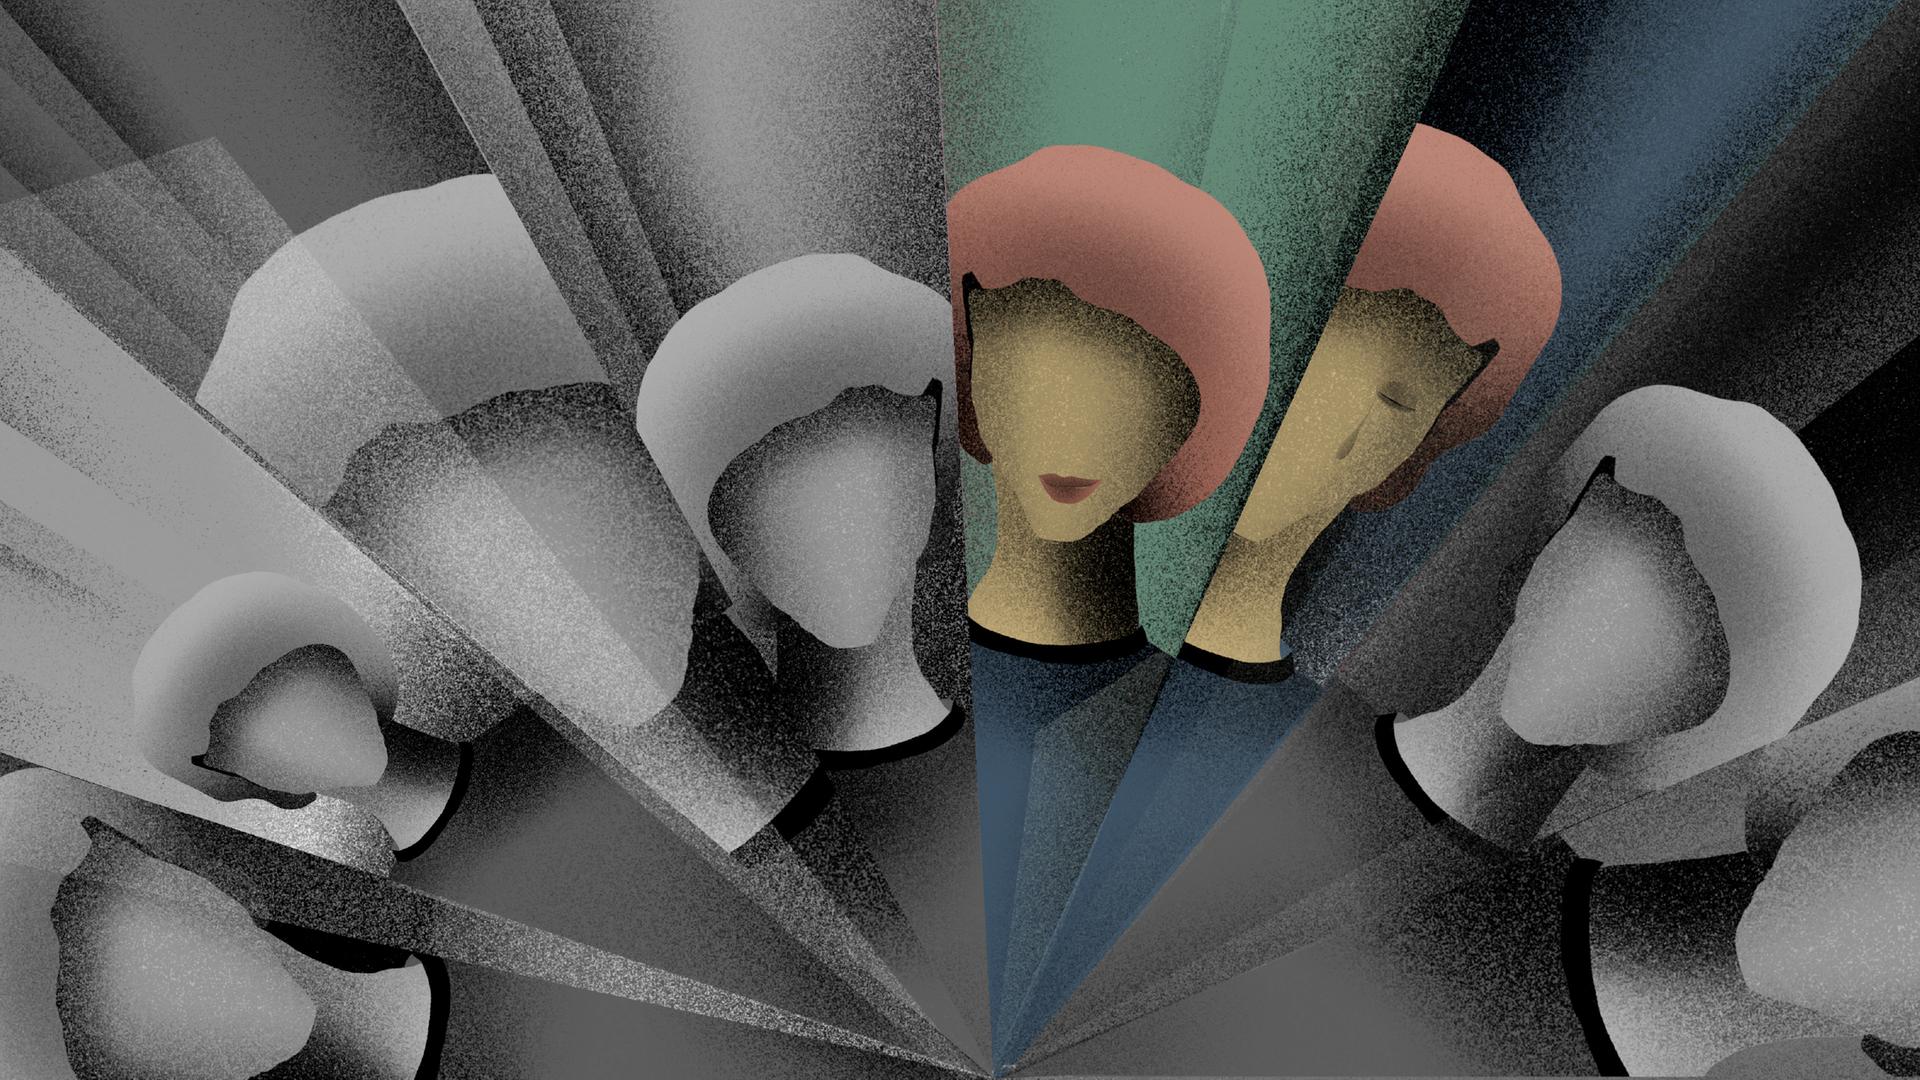 Die Illustration zeigt die Schemen einer Frau, wie in einem Kaleidoskop, in dreieckigen Ausschnitte gebrochen. Zwei dieser Fragmente sind farbig, die restlichen sind grau.